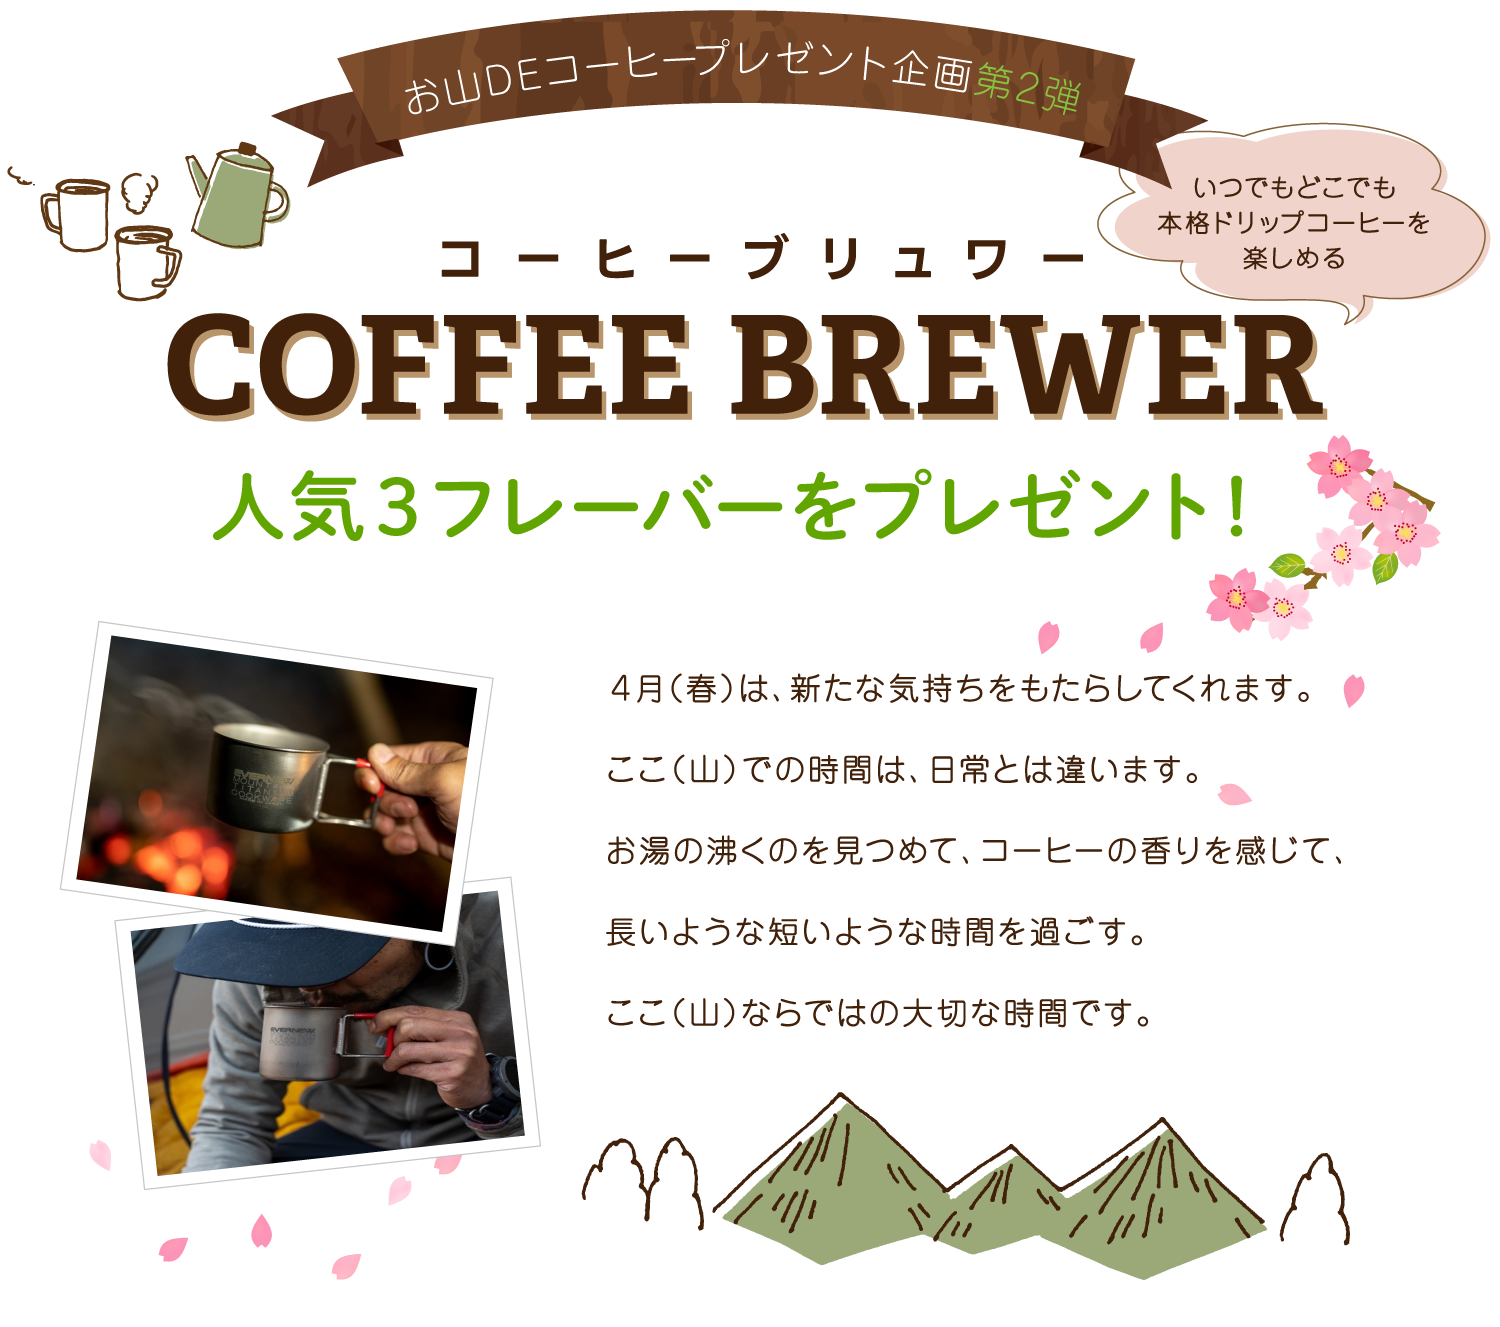 COFFEE BREWER コーヒーブリュワー人気3フレーバーをプレゼント